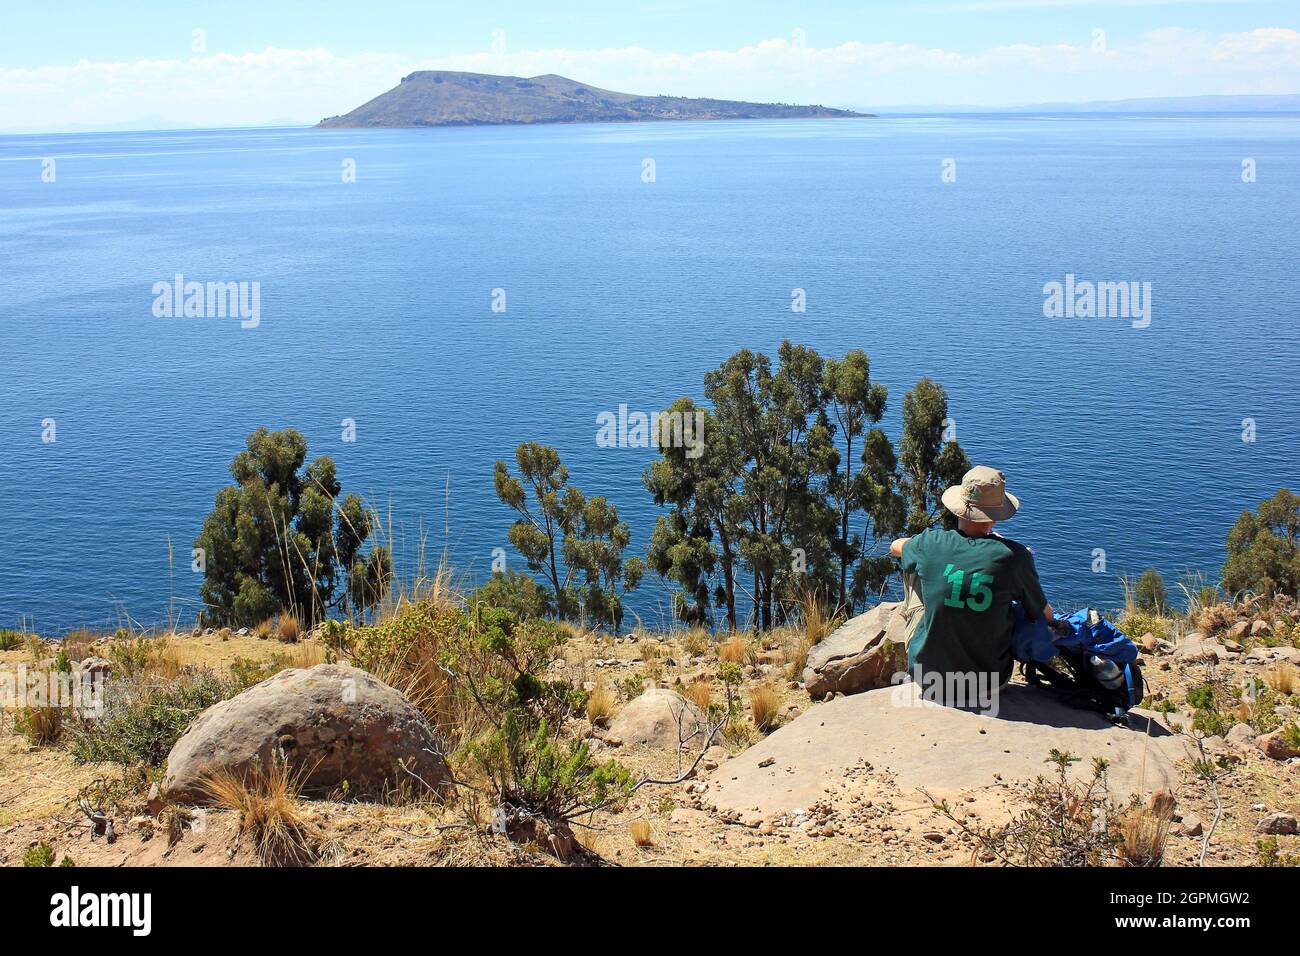 Tranquilidad en la isla Taquile, Lago Titicaca, Perú Foto de stock